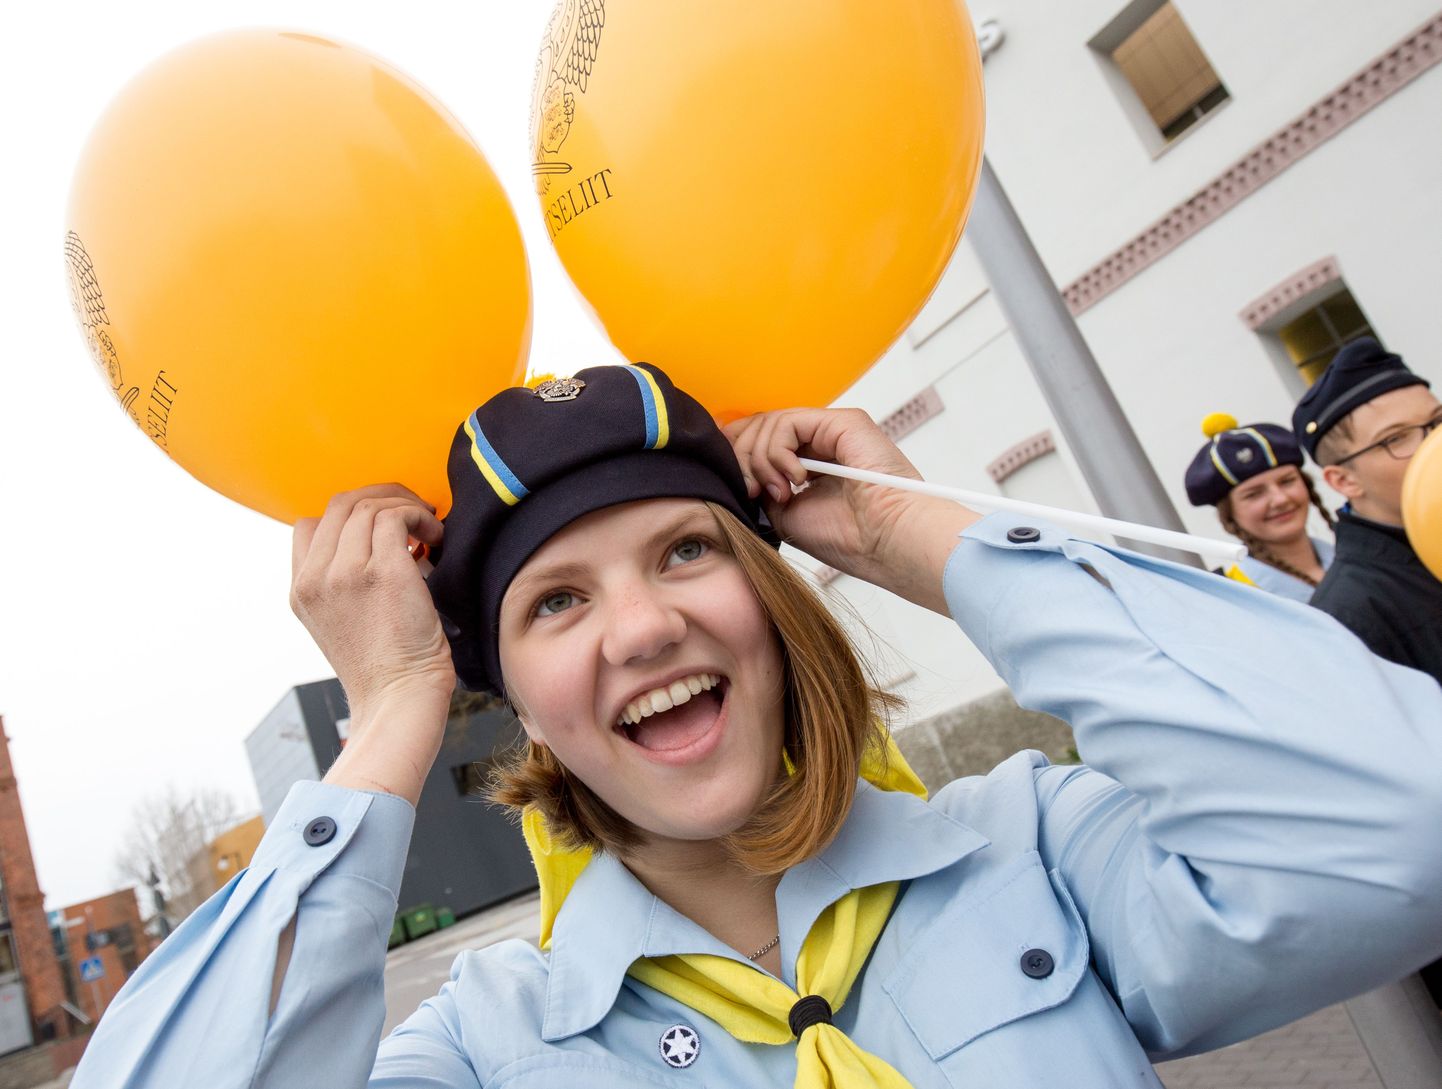 Kaitseliidu Pärnumaa maleva kodutütred ja noorkotkad tähistasid vormikandmispäeva rongkäiguga linnatänavail ja flashmobiga Martensi väljakul.